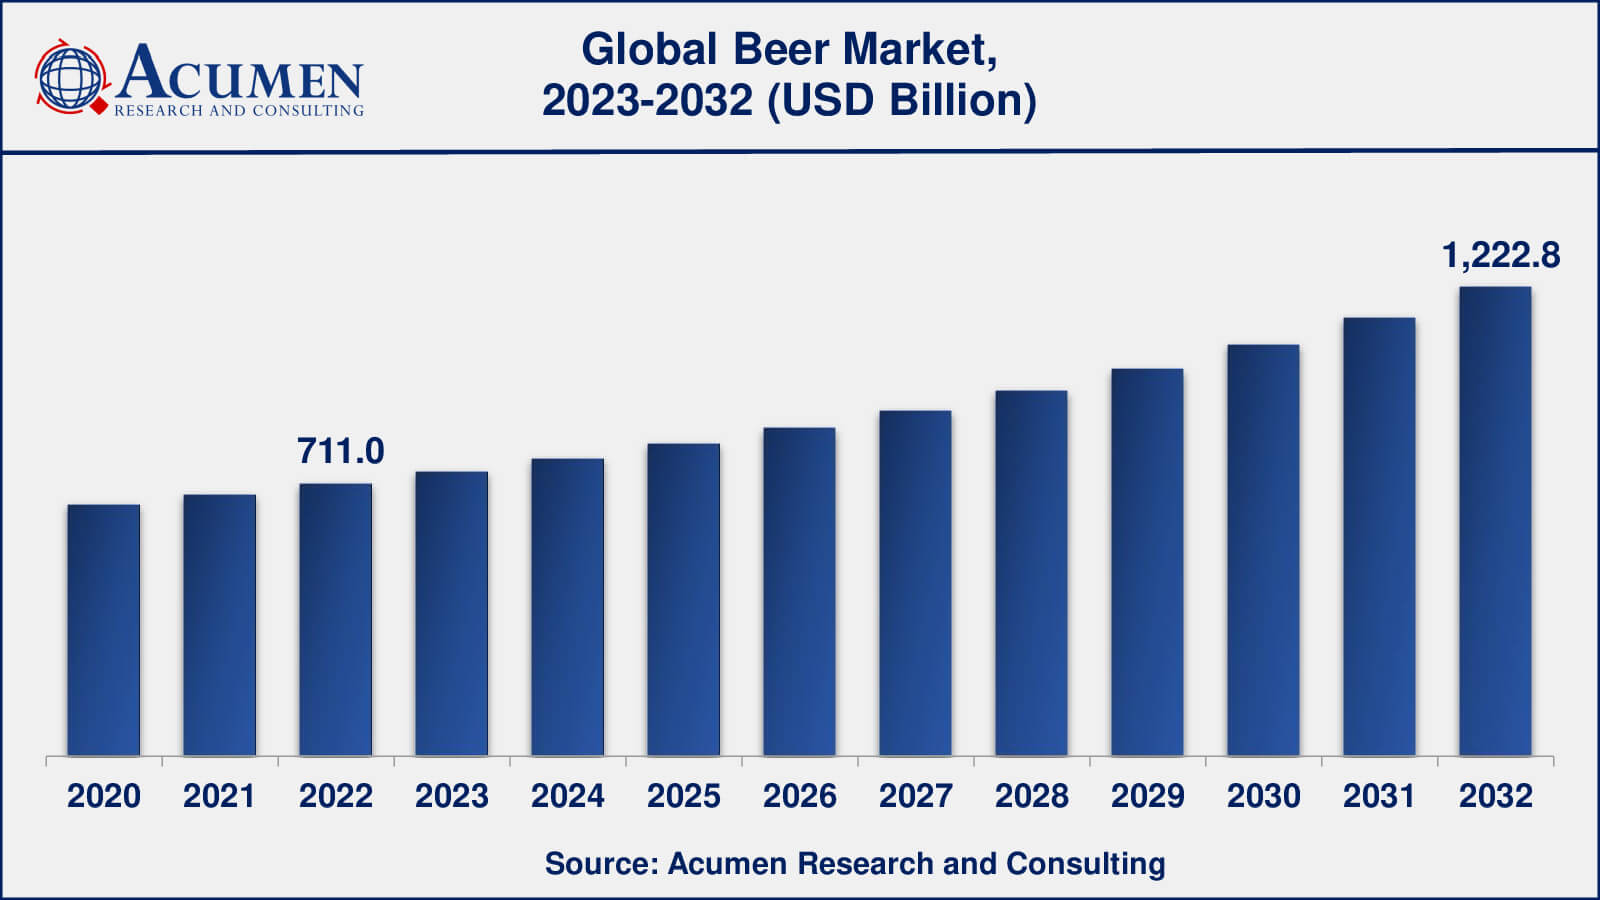 Global Beer Market Dynamics